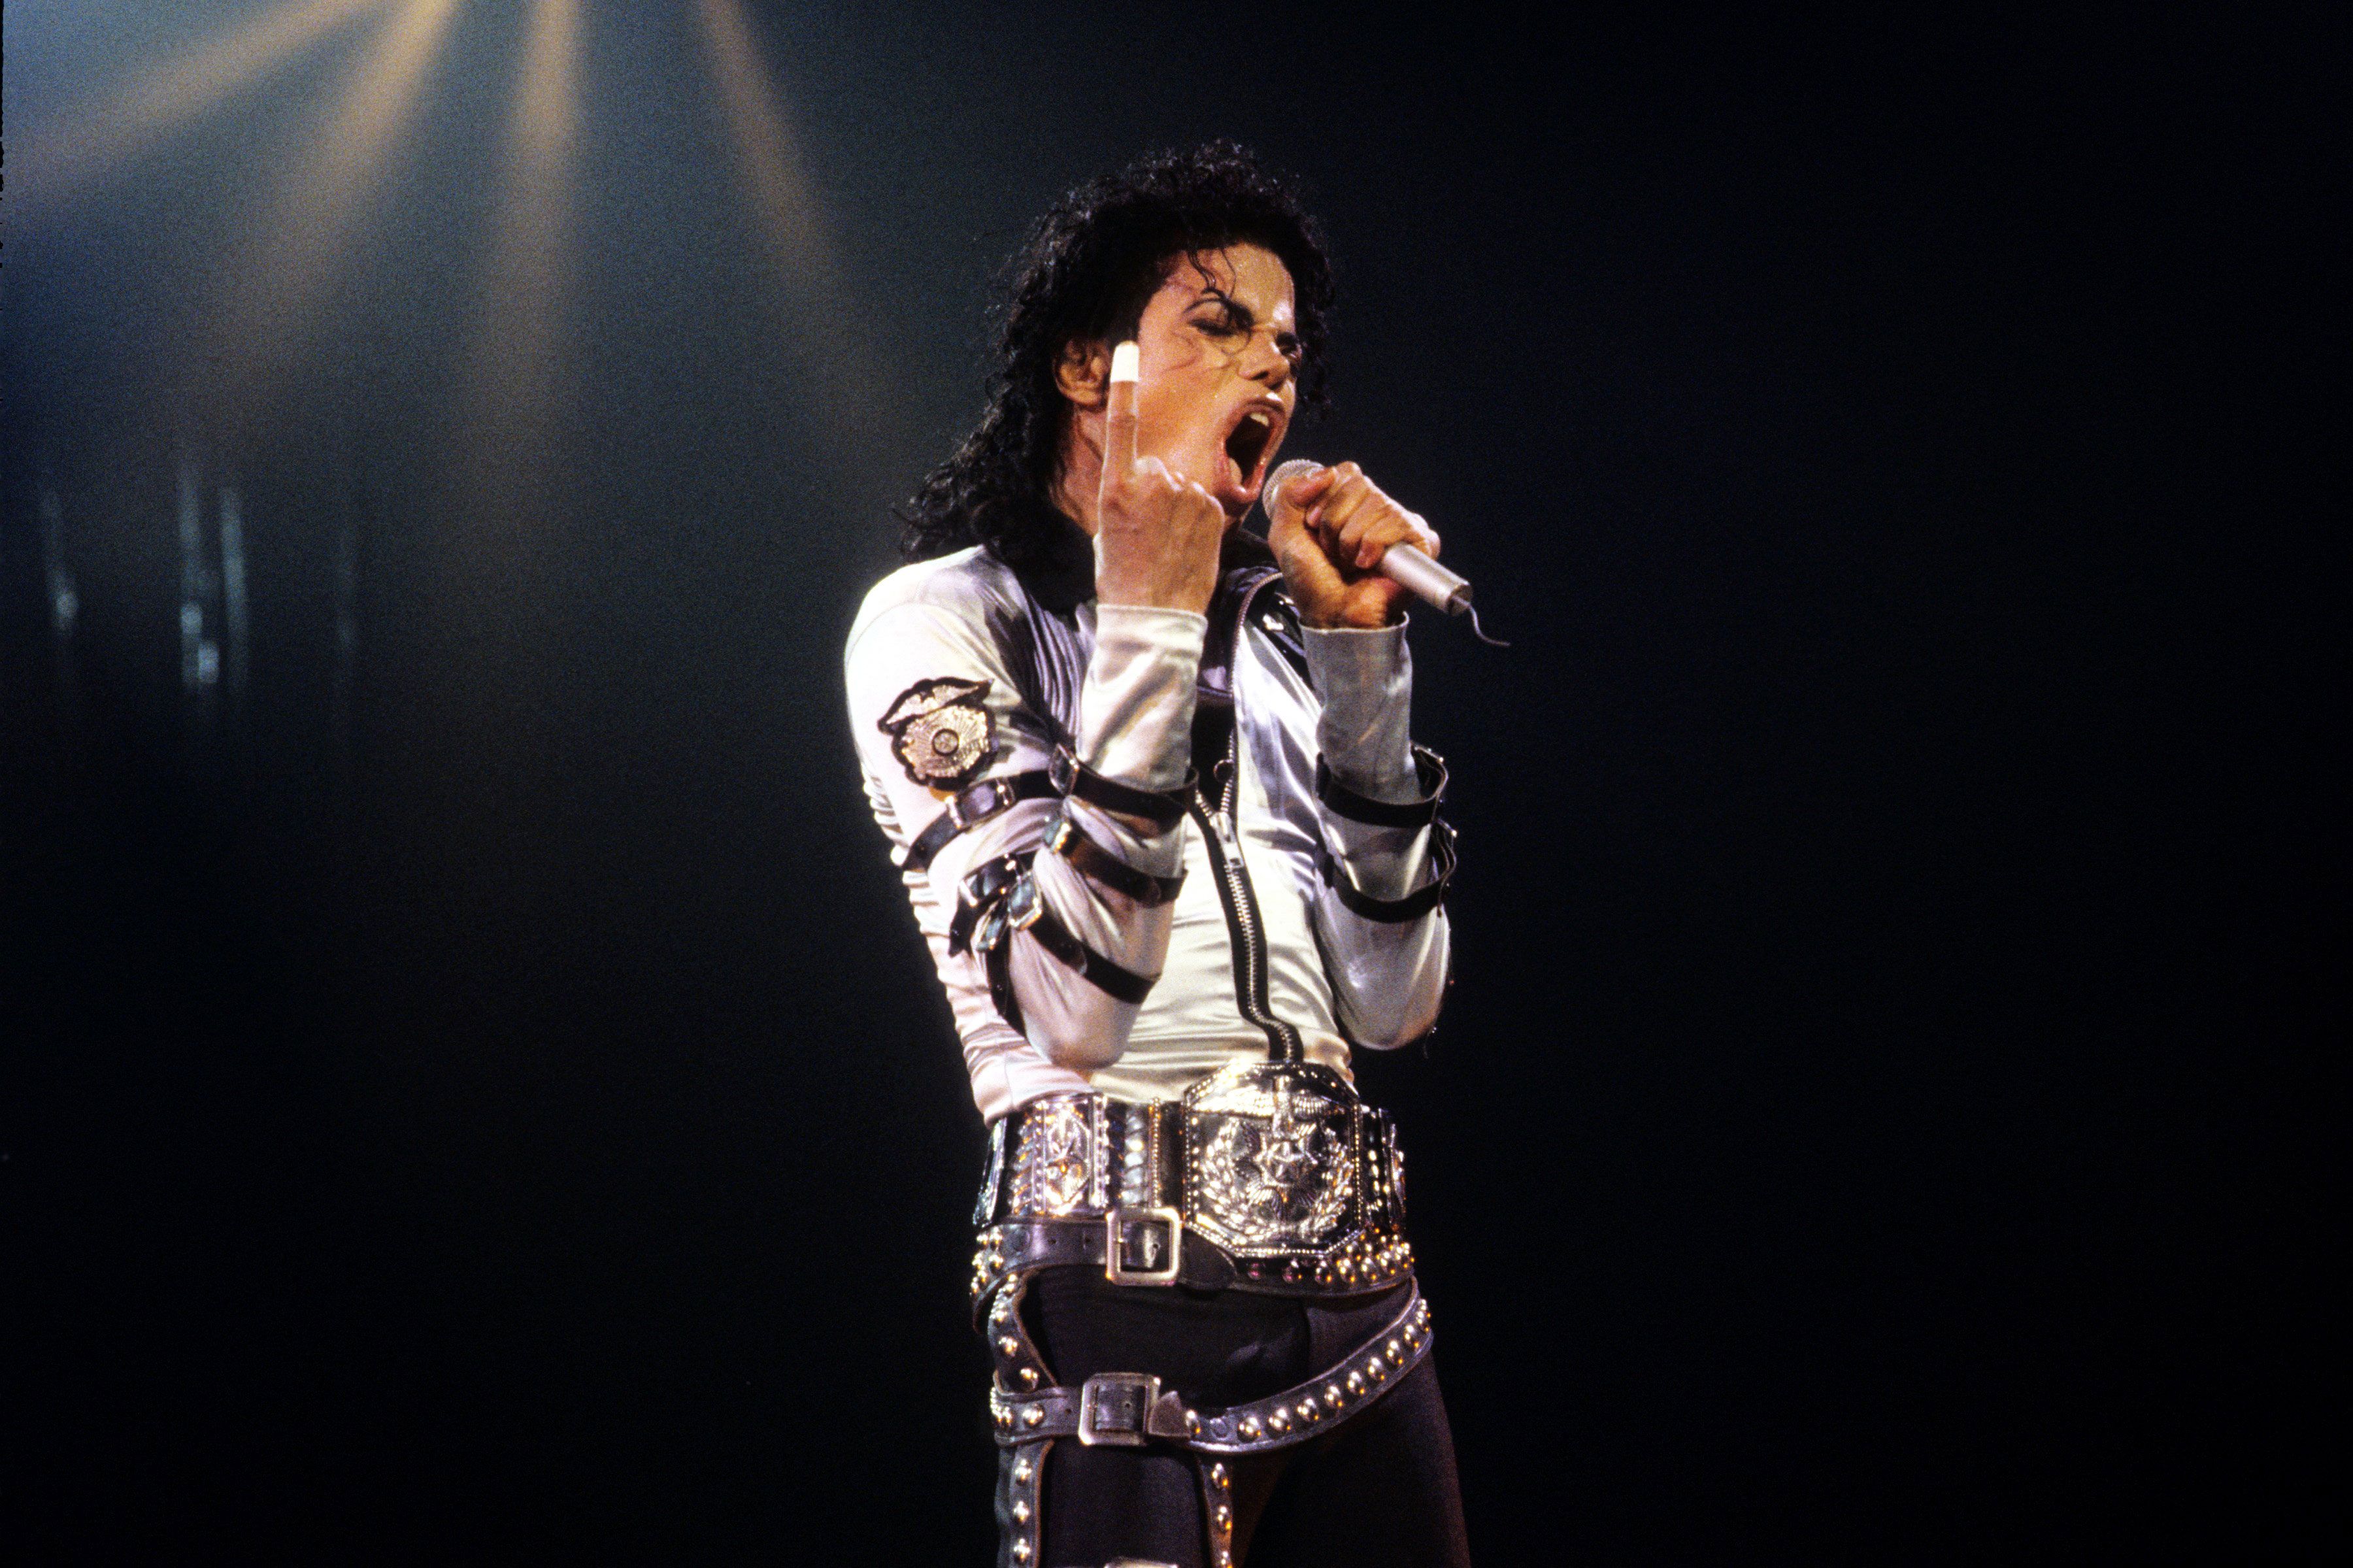 Michael jackson video. Michael Jackson 1989. Michael Jackson 1997.